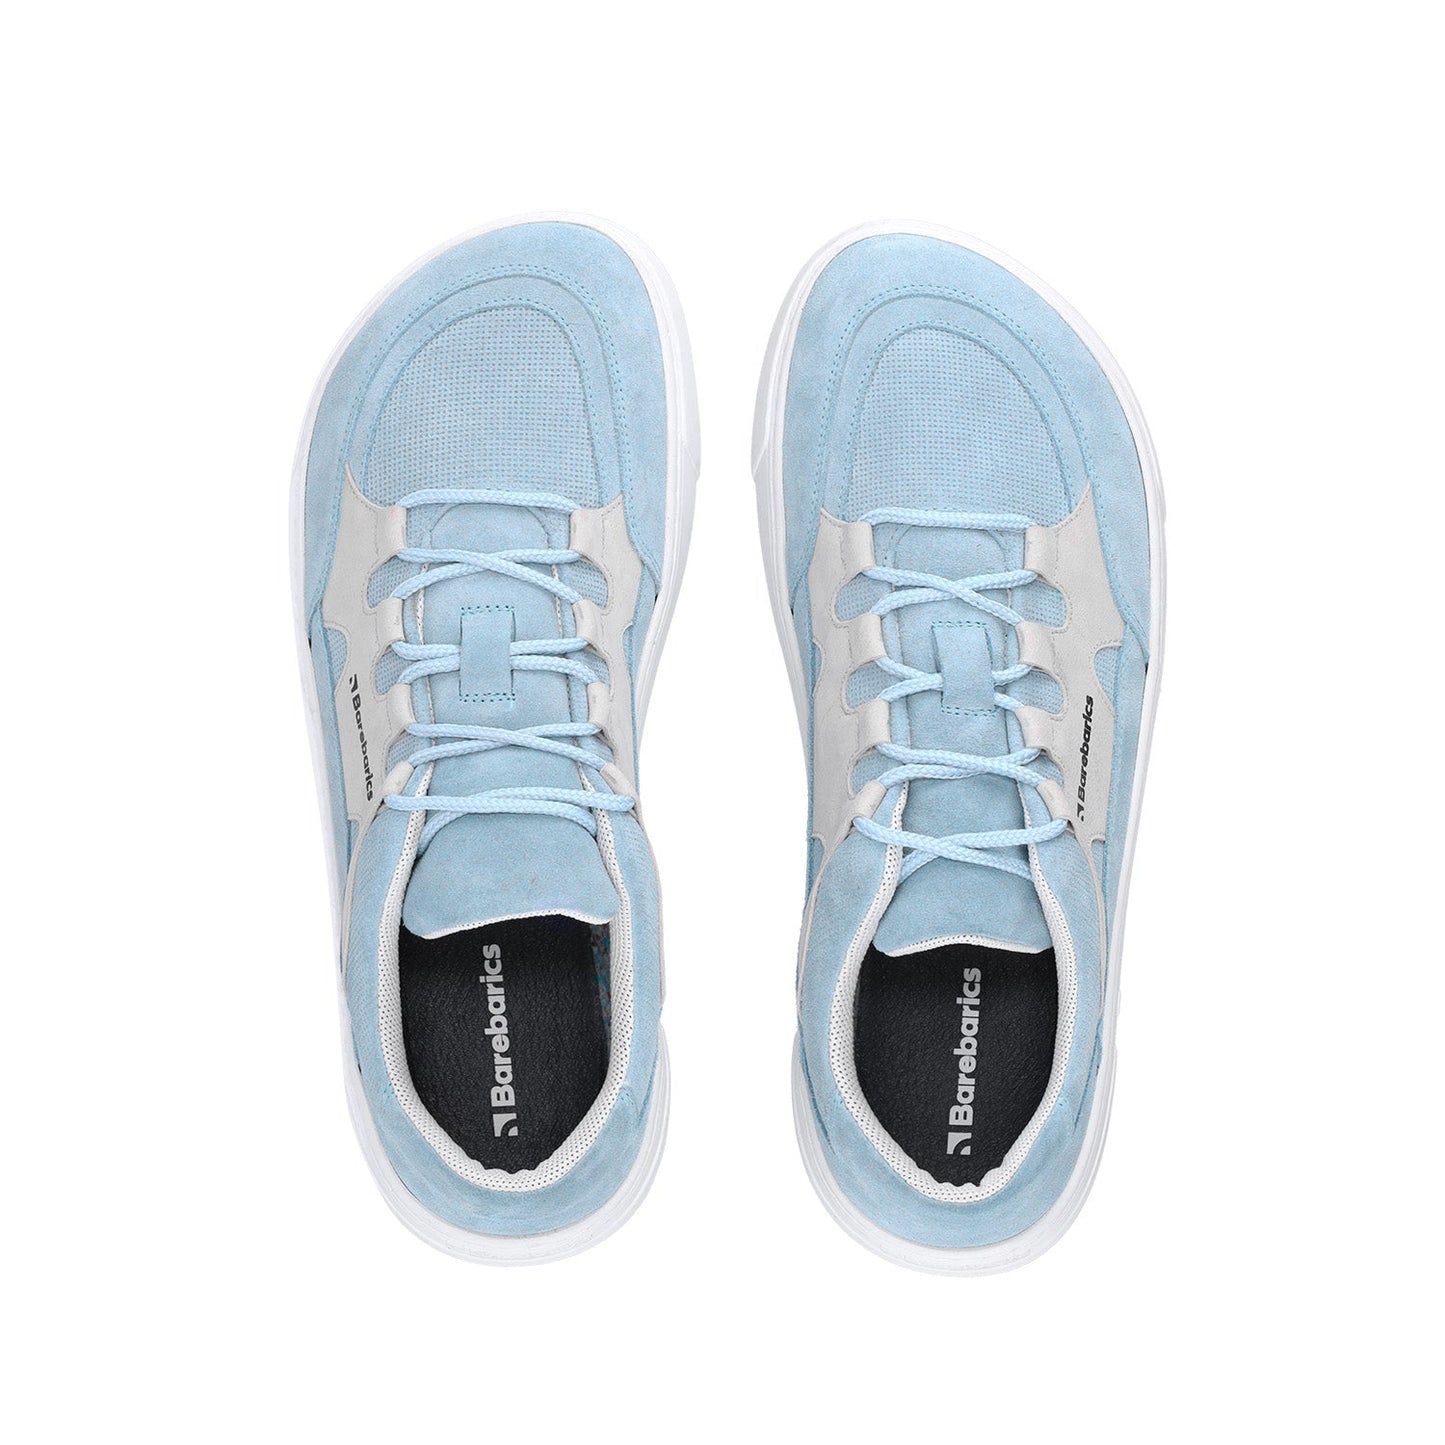 Barefoot Sneakers Barebarics Evo - Light Blue & White